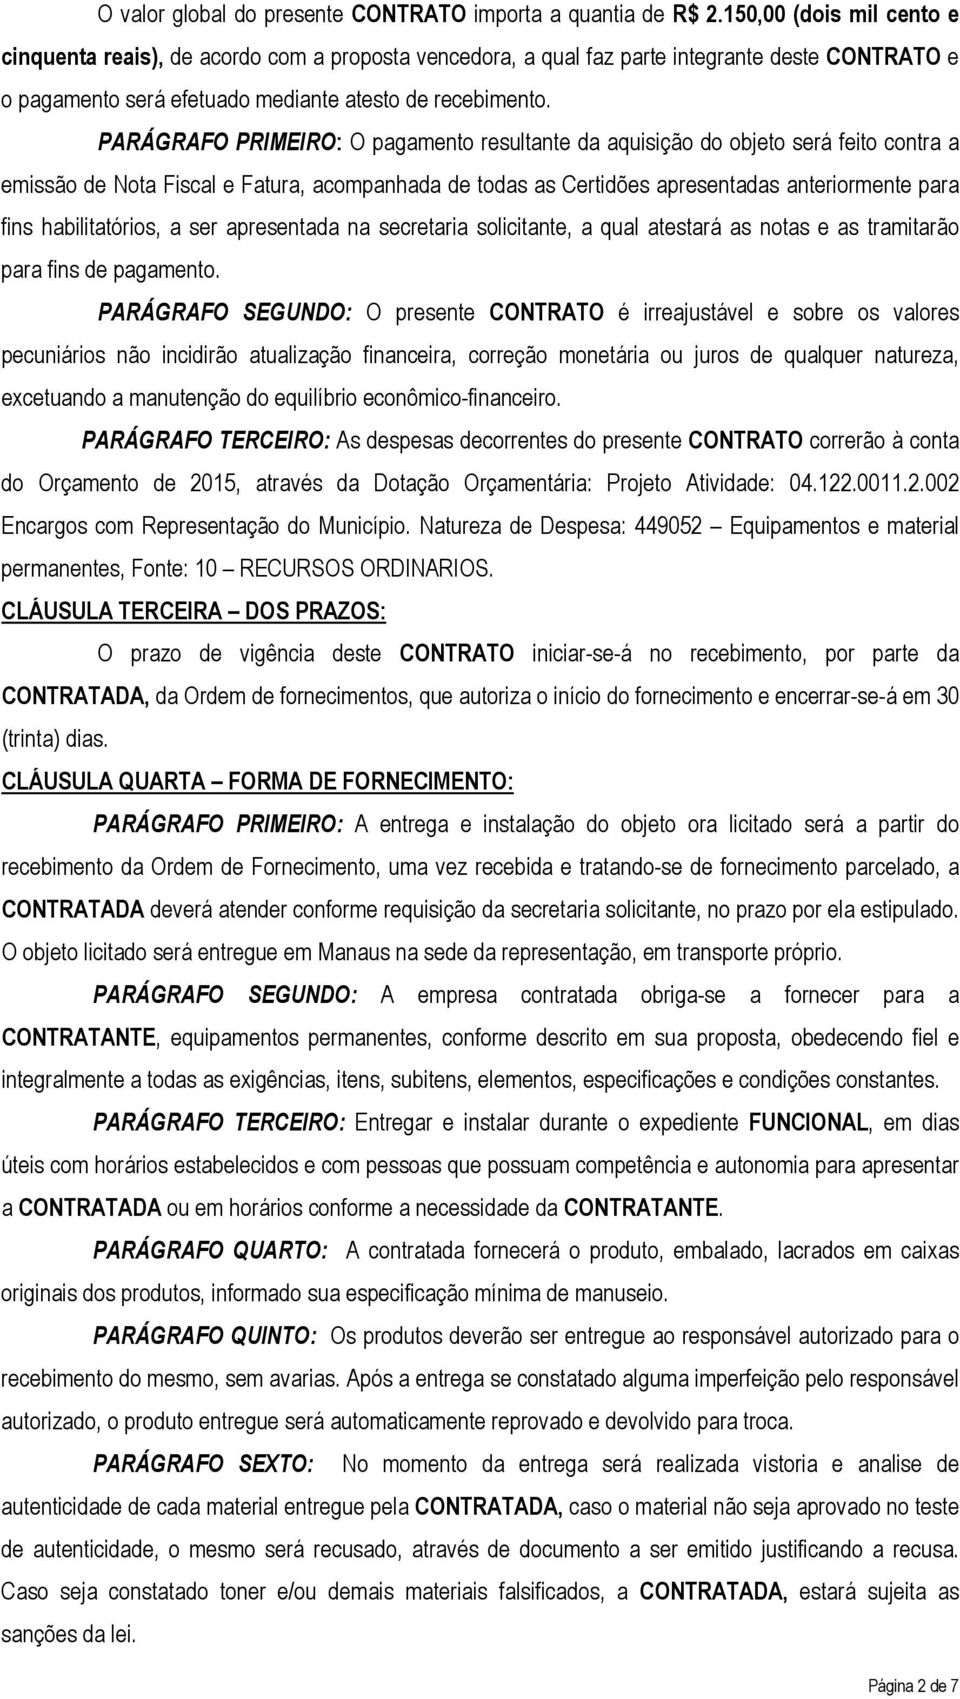 PARÁGRAFO PRIMEIRO: O pagamento resultante da aquisição do objeto será feito contra a emissão de Nota Fiscal e Fatura, acompanhada de todas as Certidões apresentadas anteriormente para fins